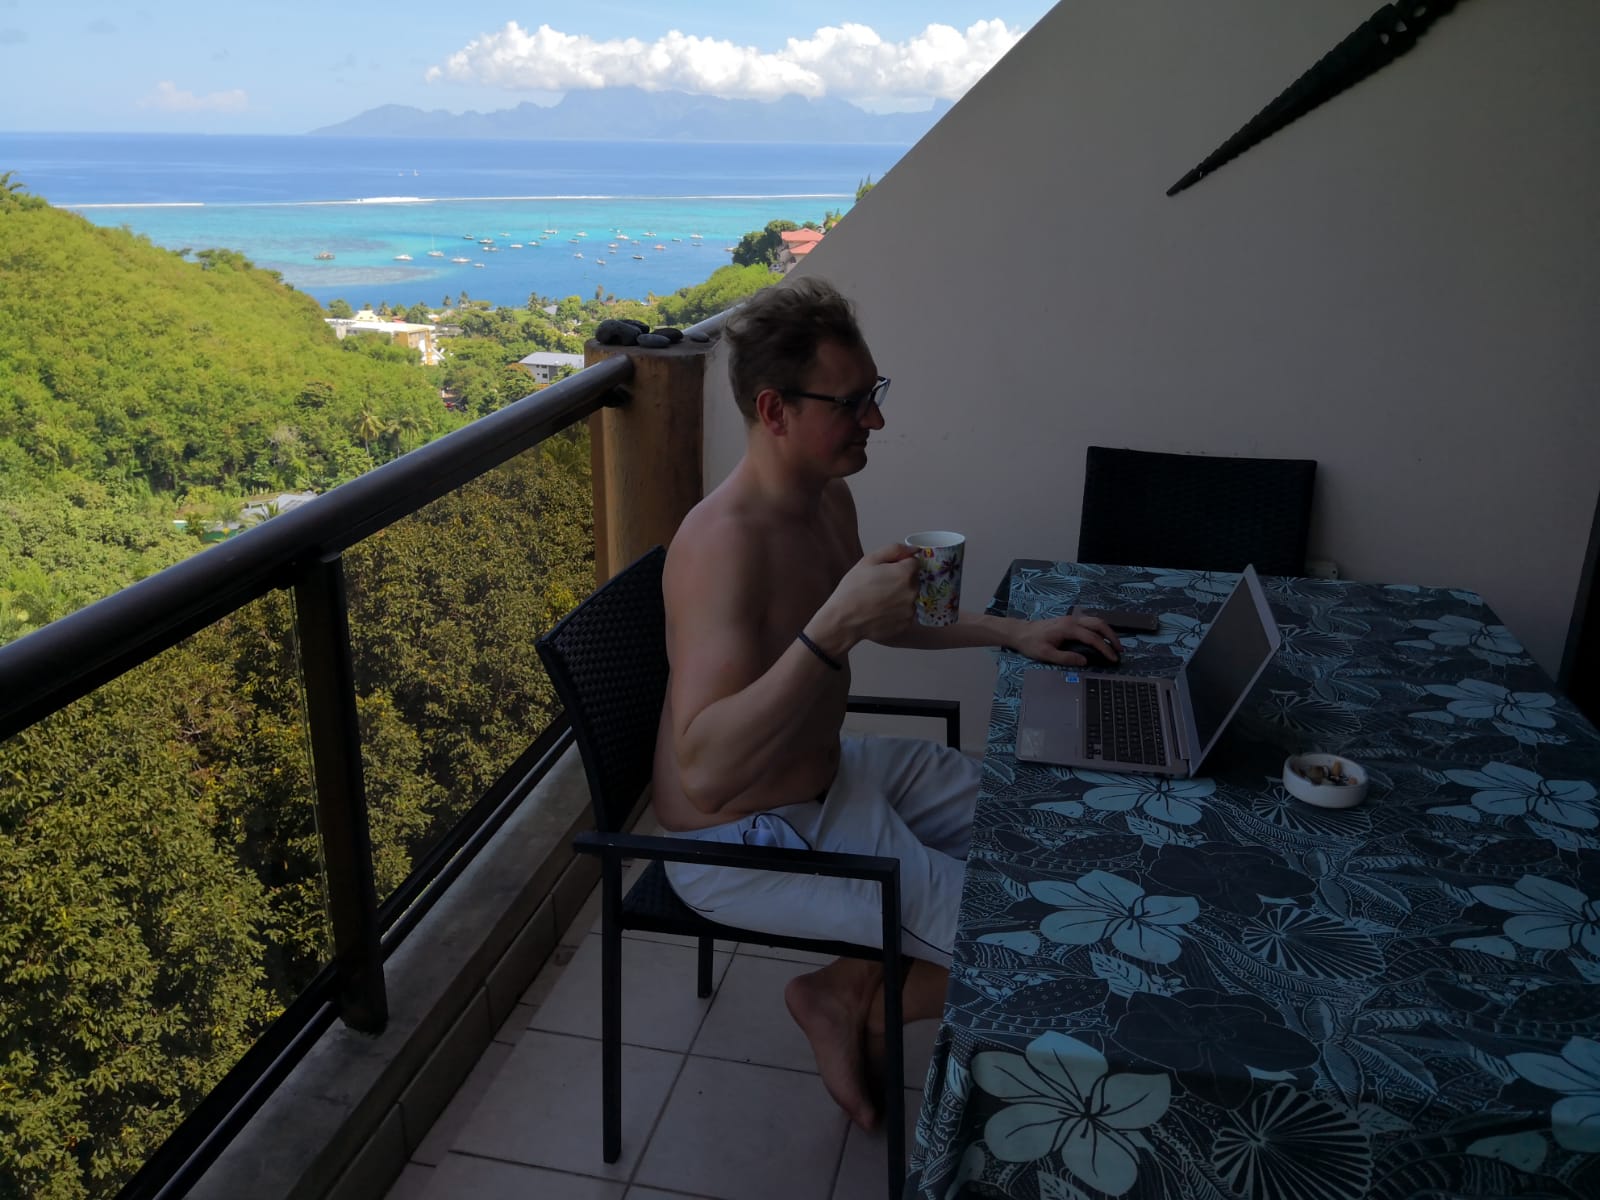 Batídos de natación y playa: el mejor lugar del que he trabajado como nómada digital es ... ¡Tahití! : Batídos de natación y playa: el mejor lugar del que he trabajado como nómada digital es ... ¡Tahití!